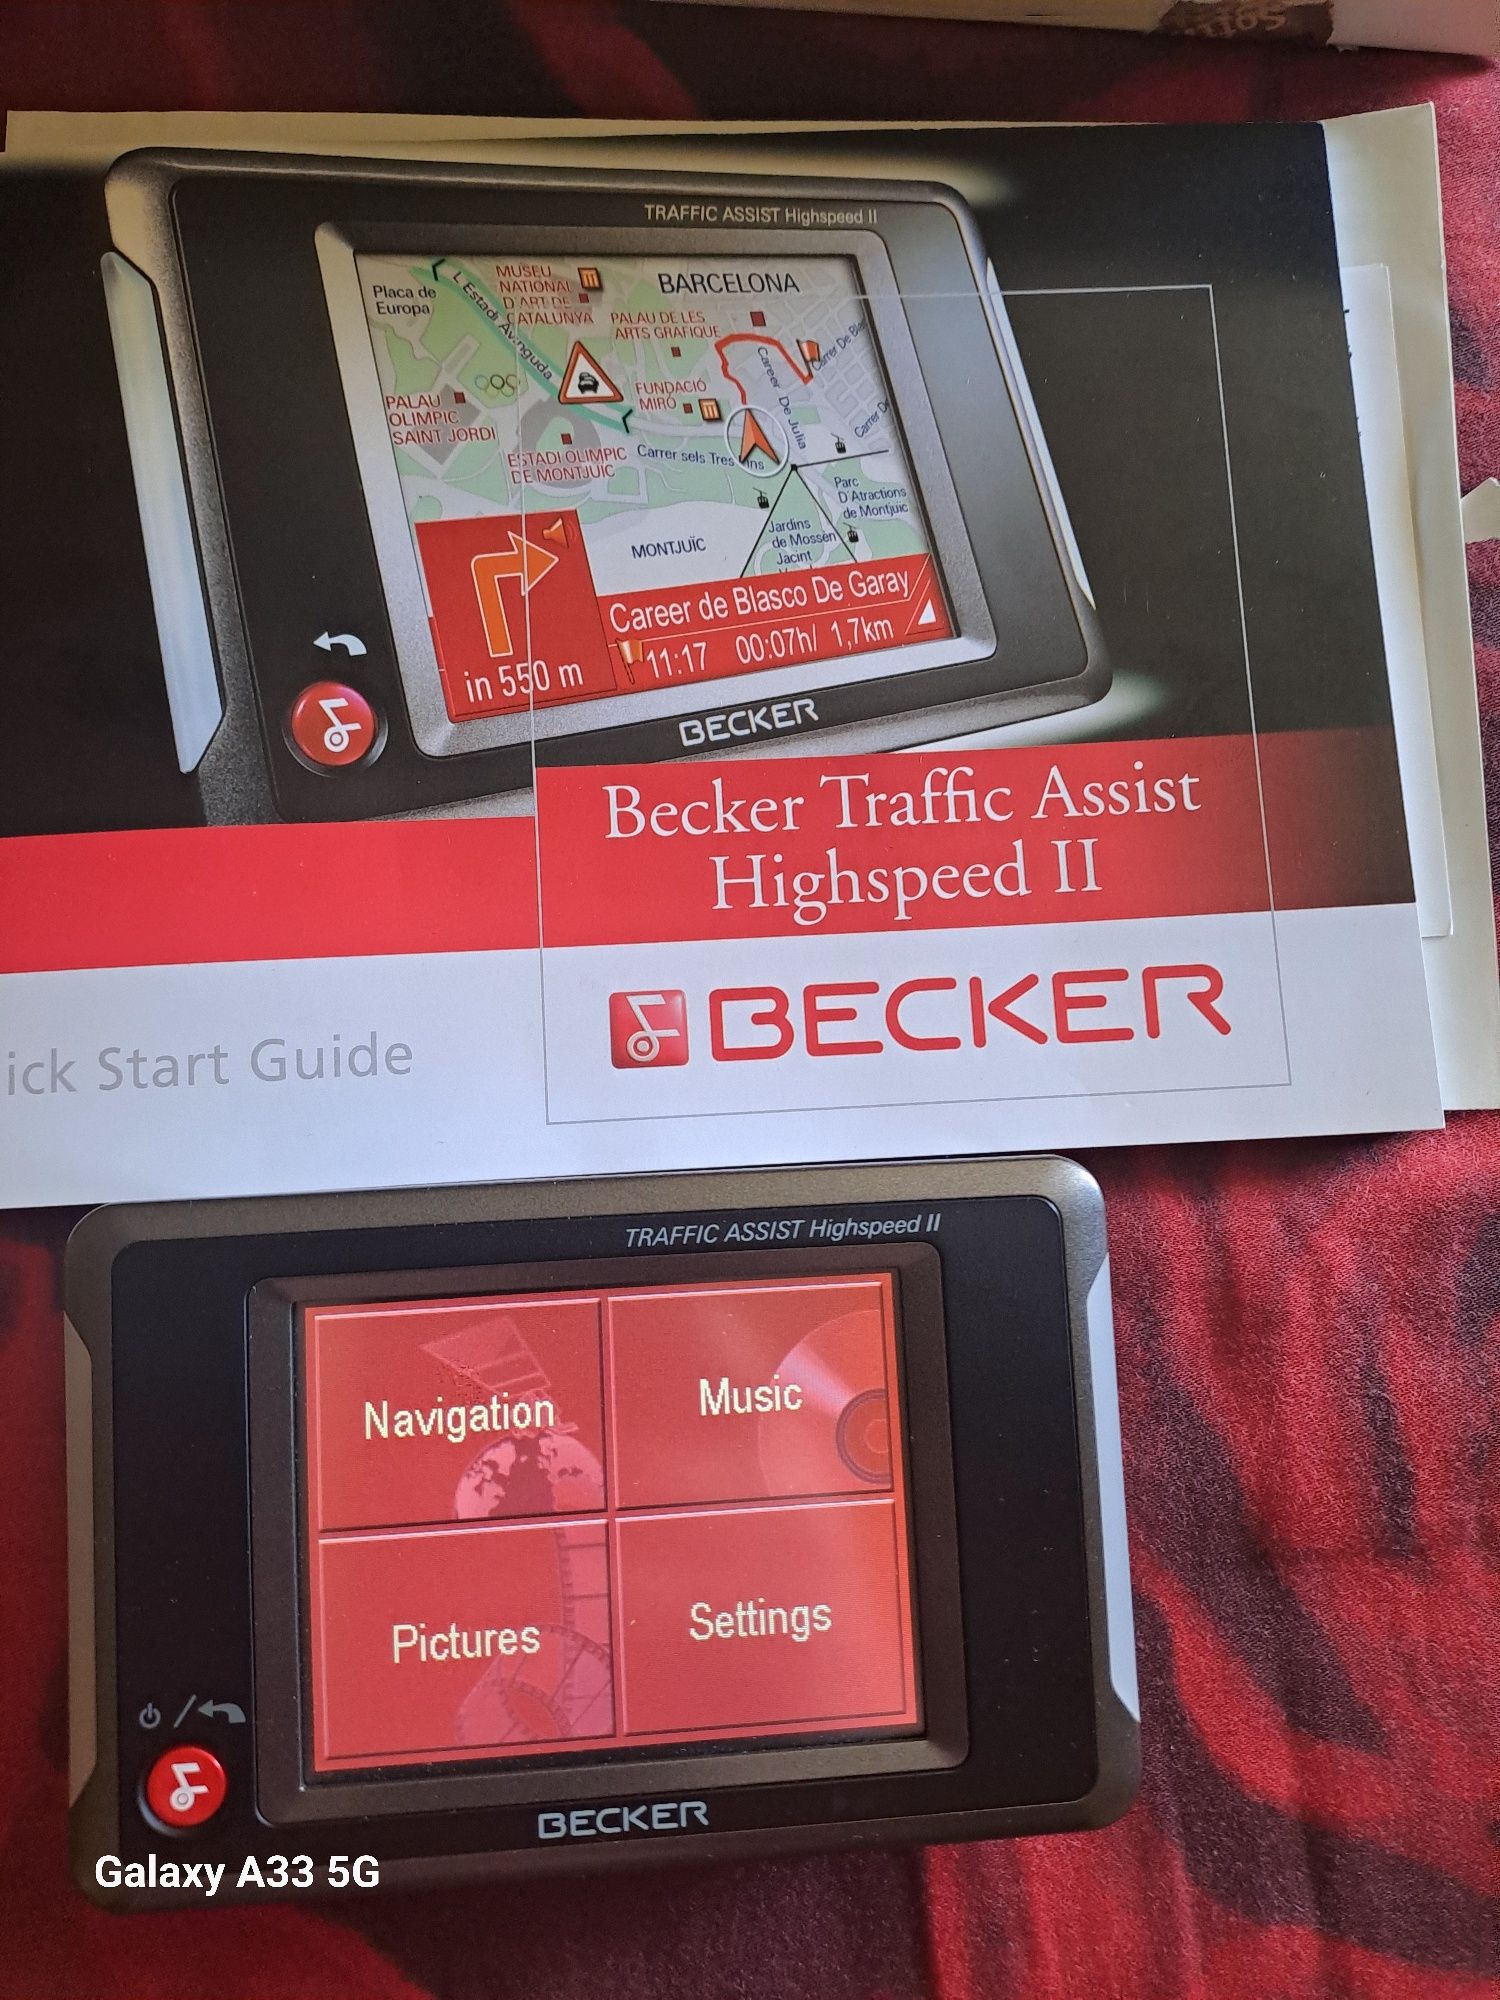 Becker traffic assist highspeed 2